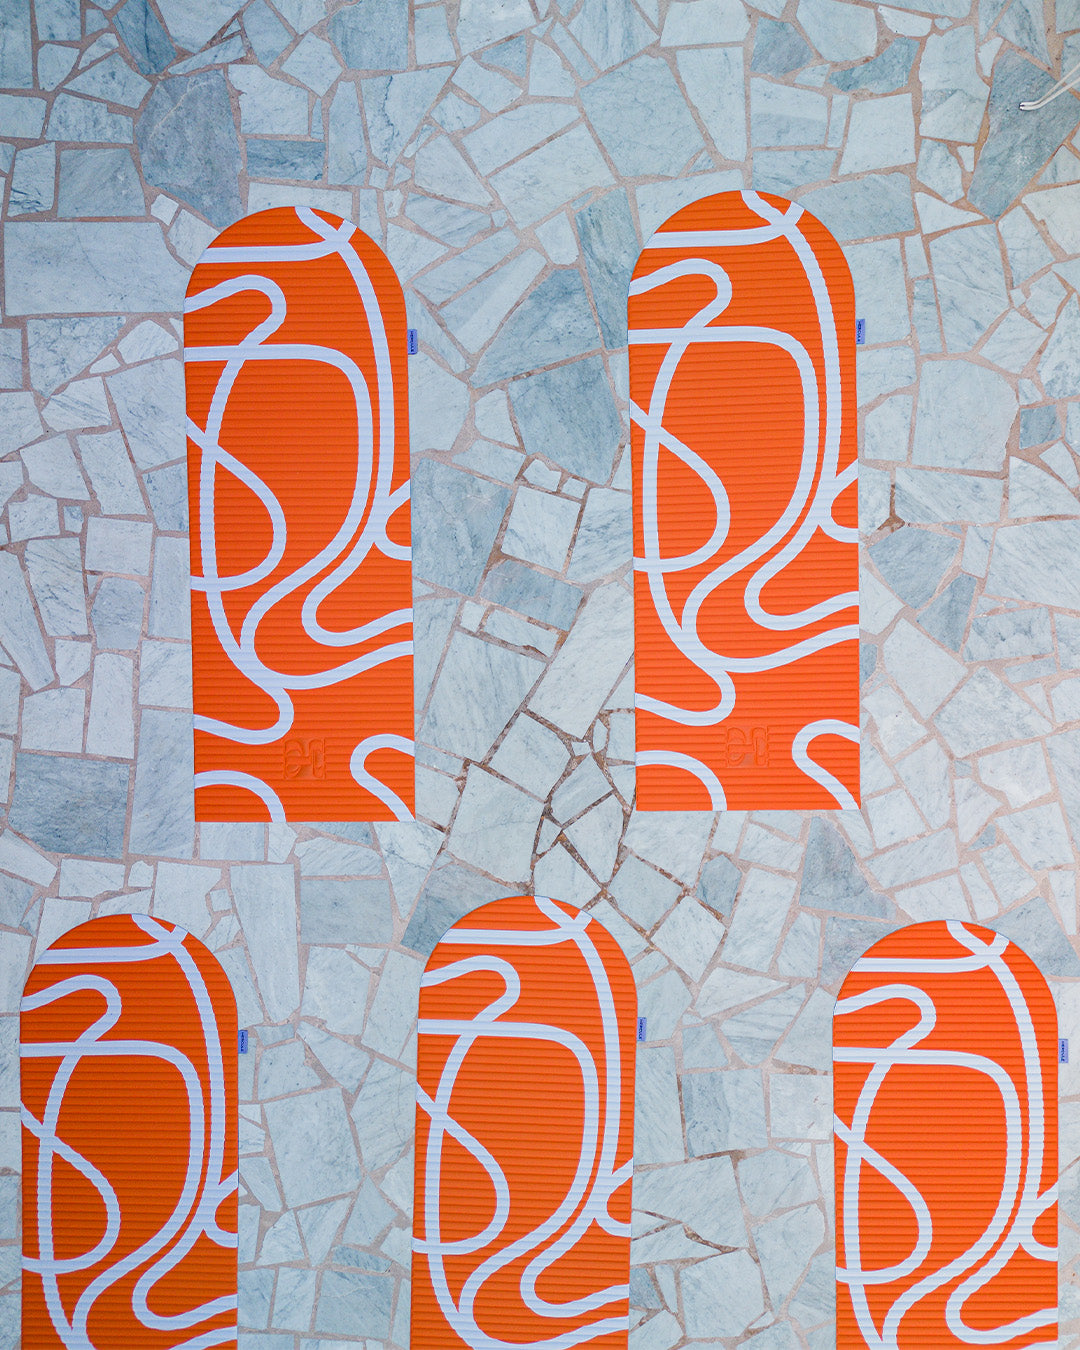 Tapis de sol pour le fitness le yoga et le pilates de la marque hercule studio modèle archy couleur imprimé bari orange pop photo de cinq tapis dépliés